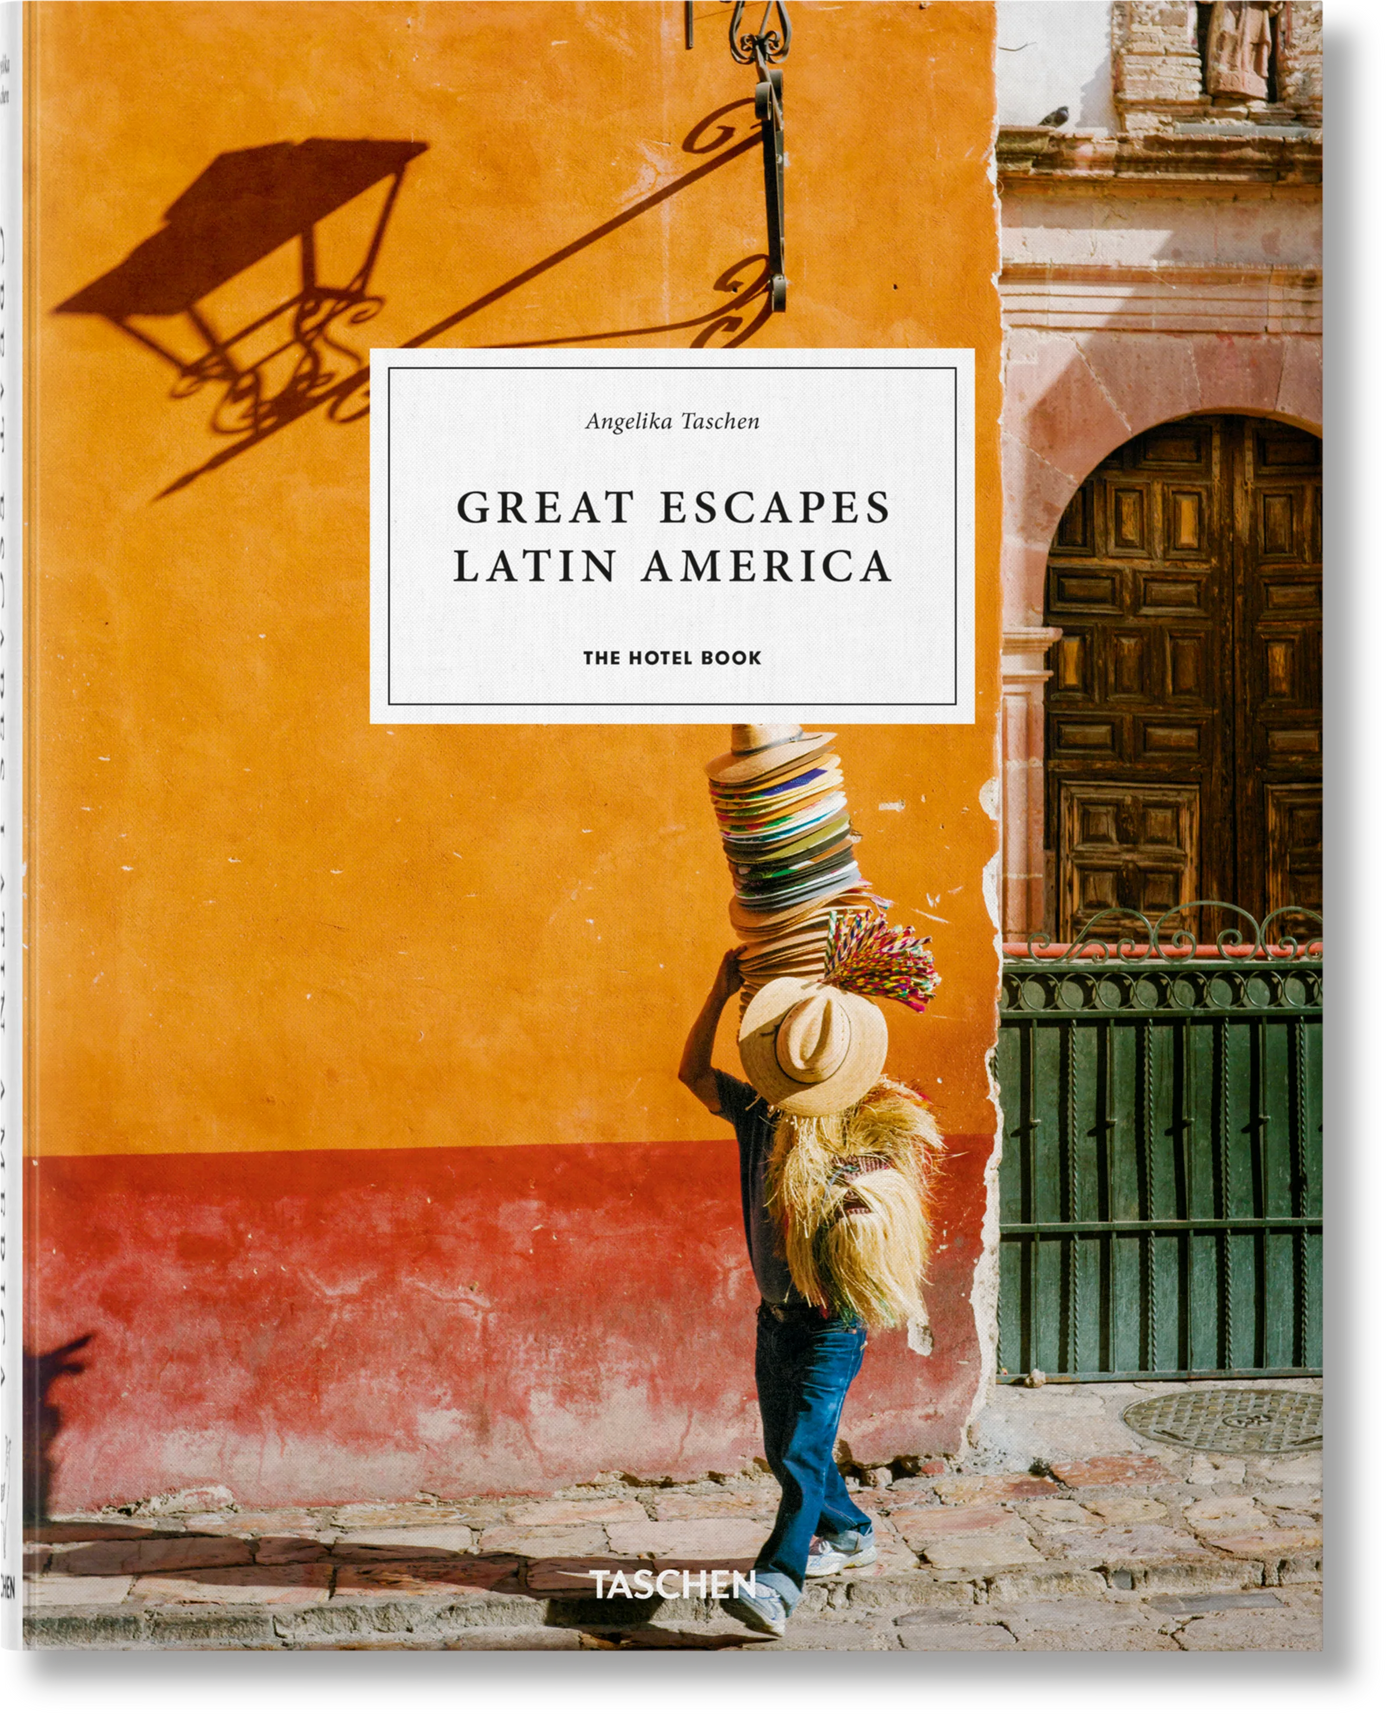 The Great Escape Latin America. The Hotel Book